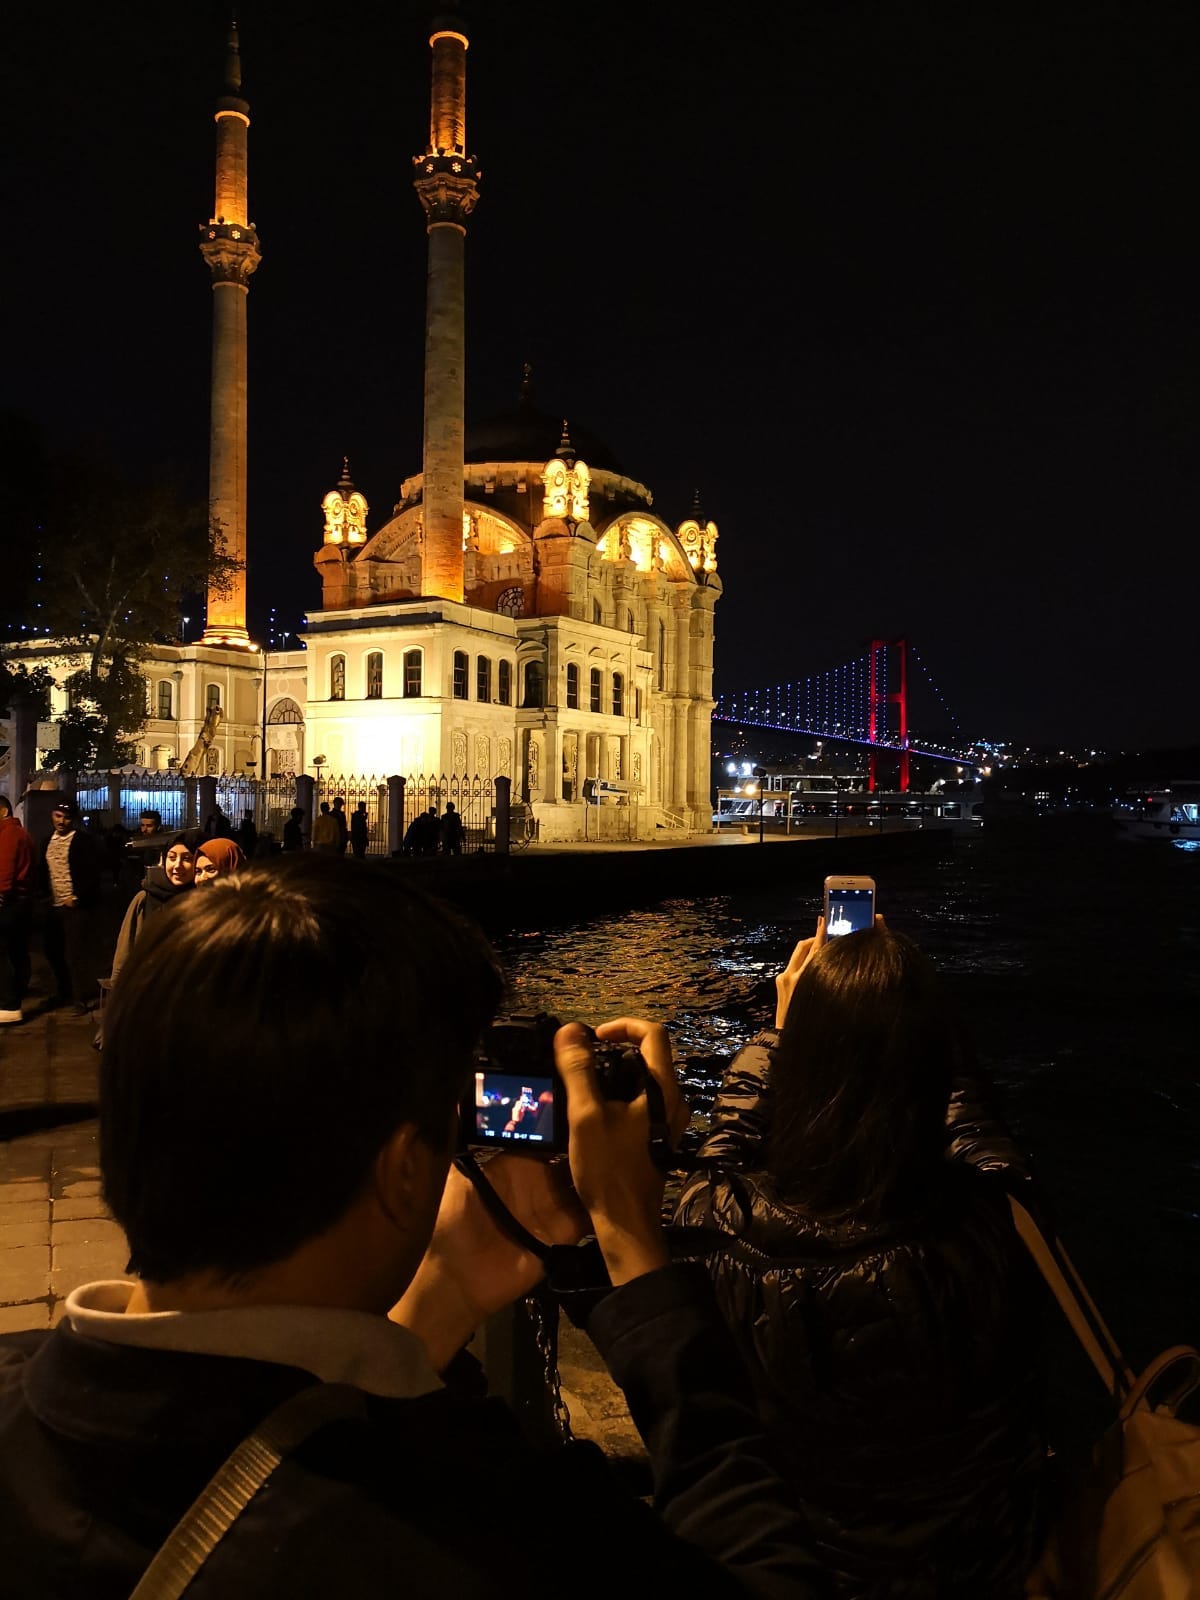 Passeio de conexão em Istambul